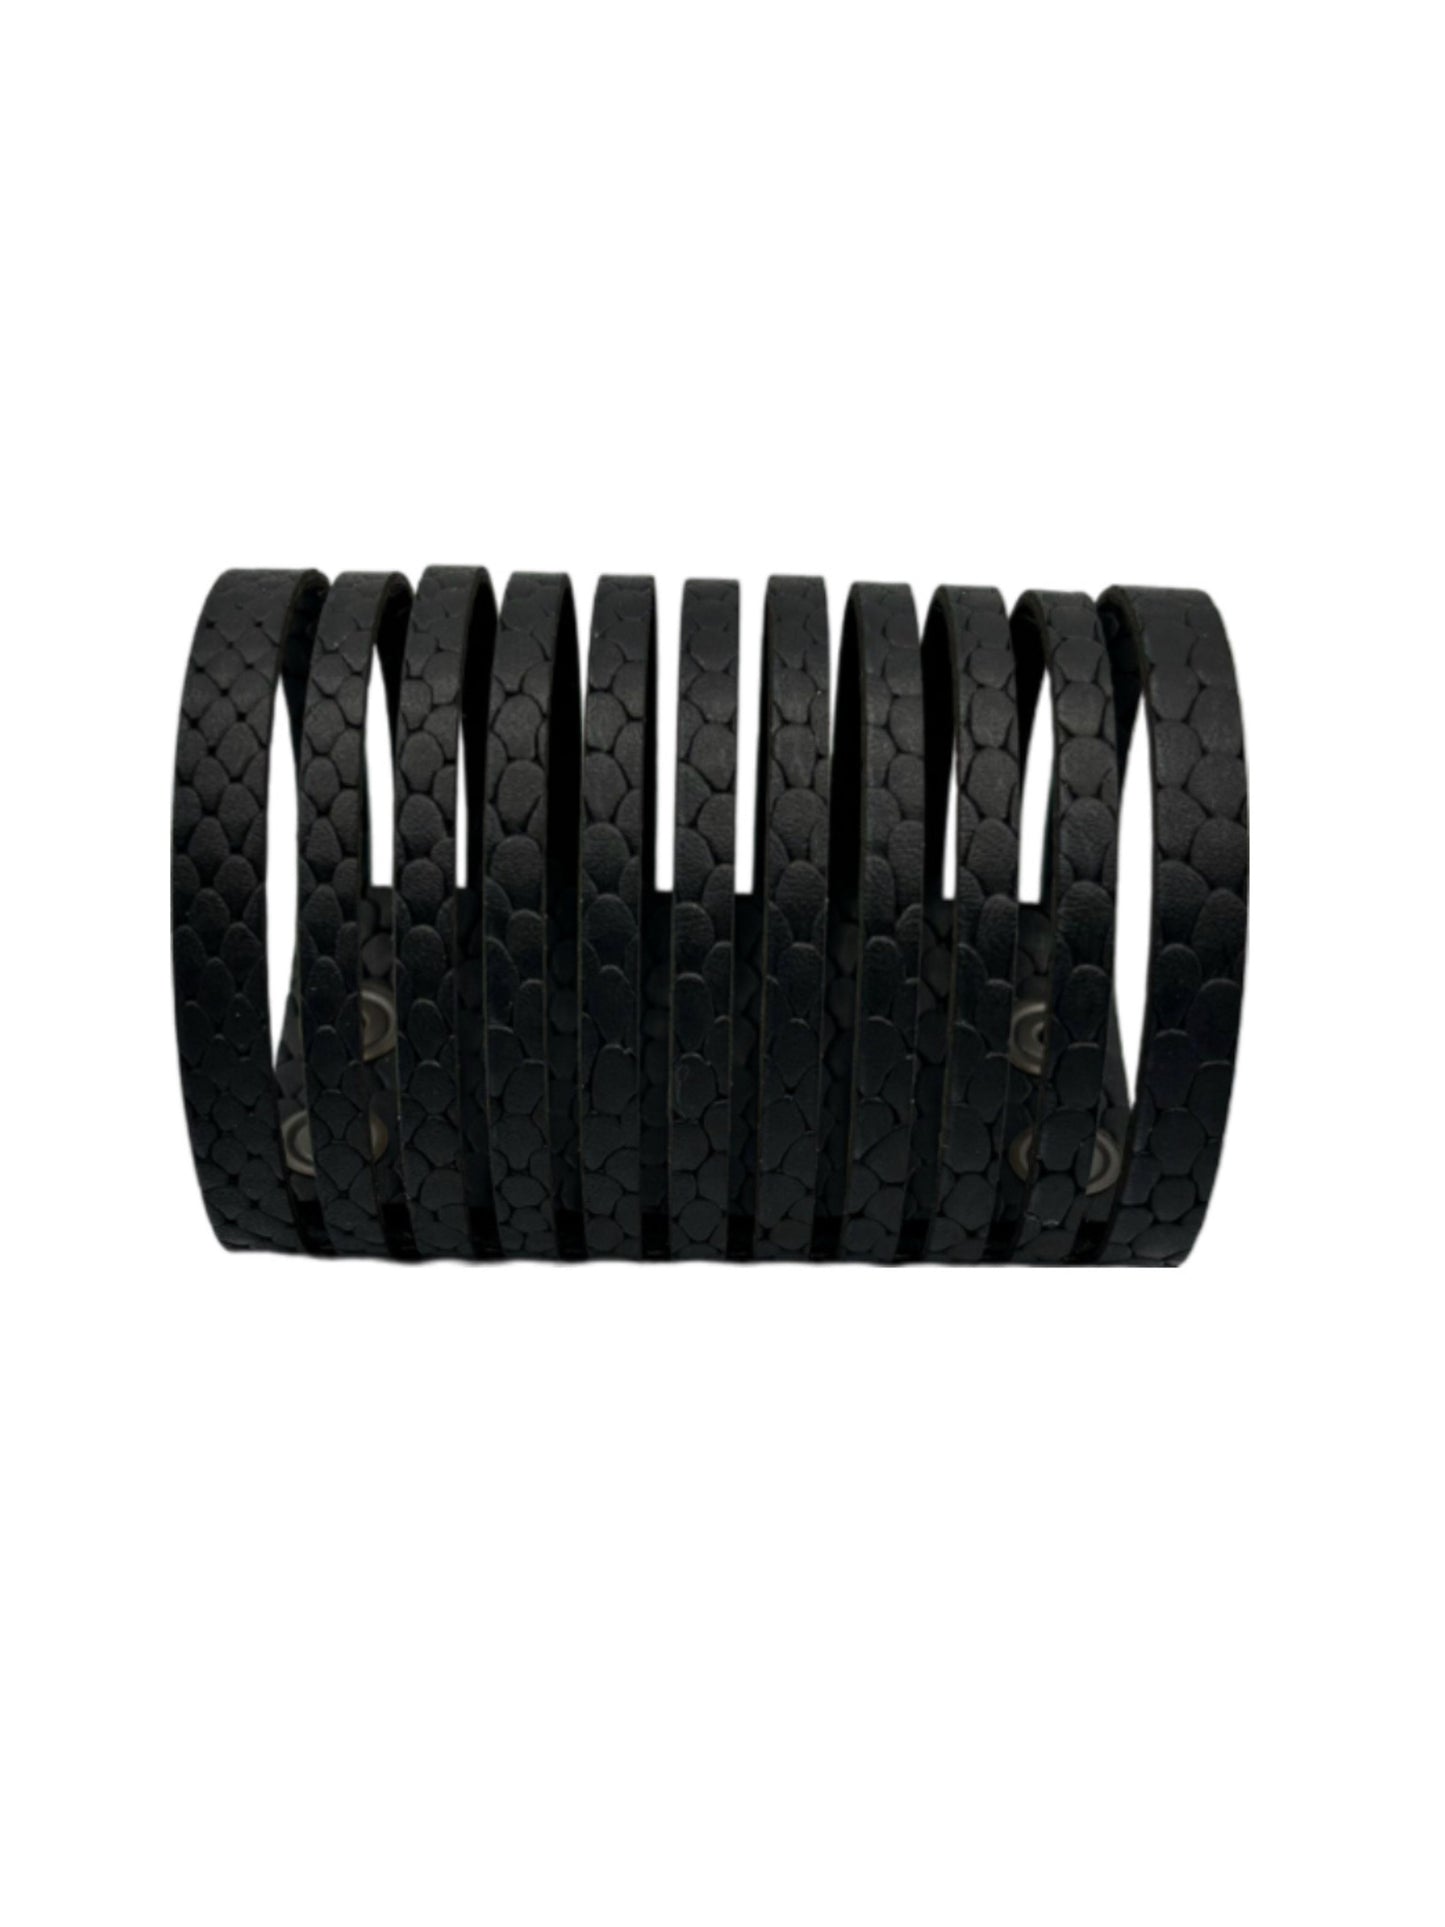 Ribbon Bracelet - Black Reptile Mat